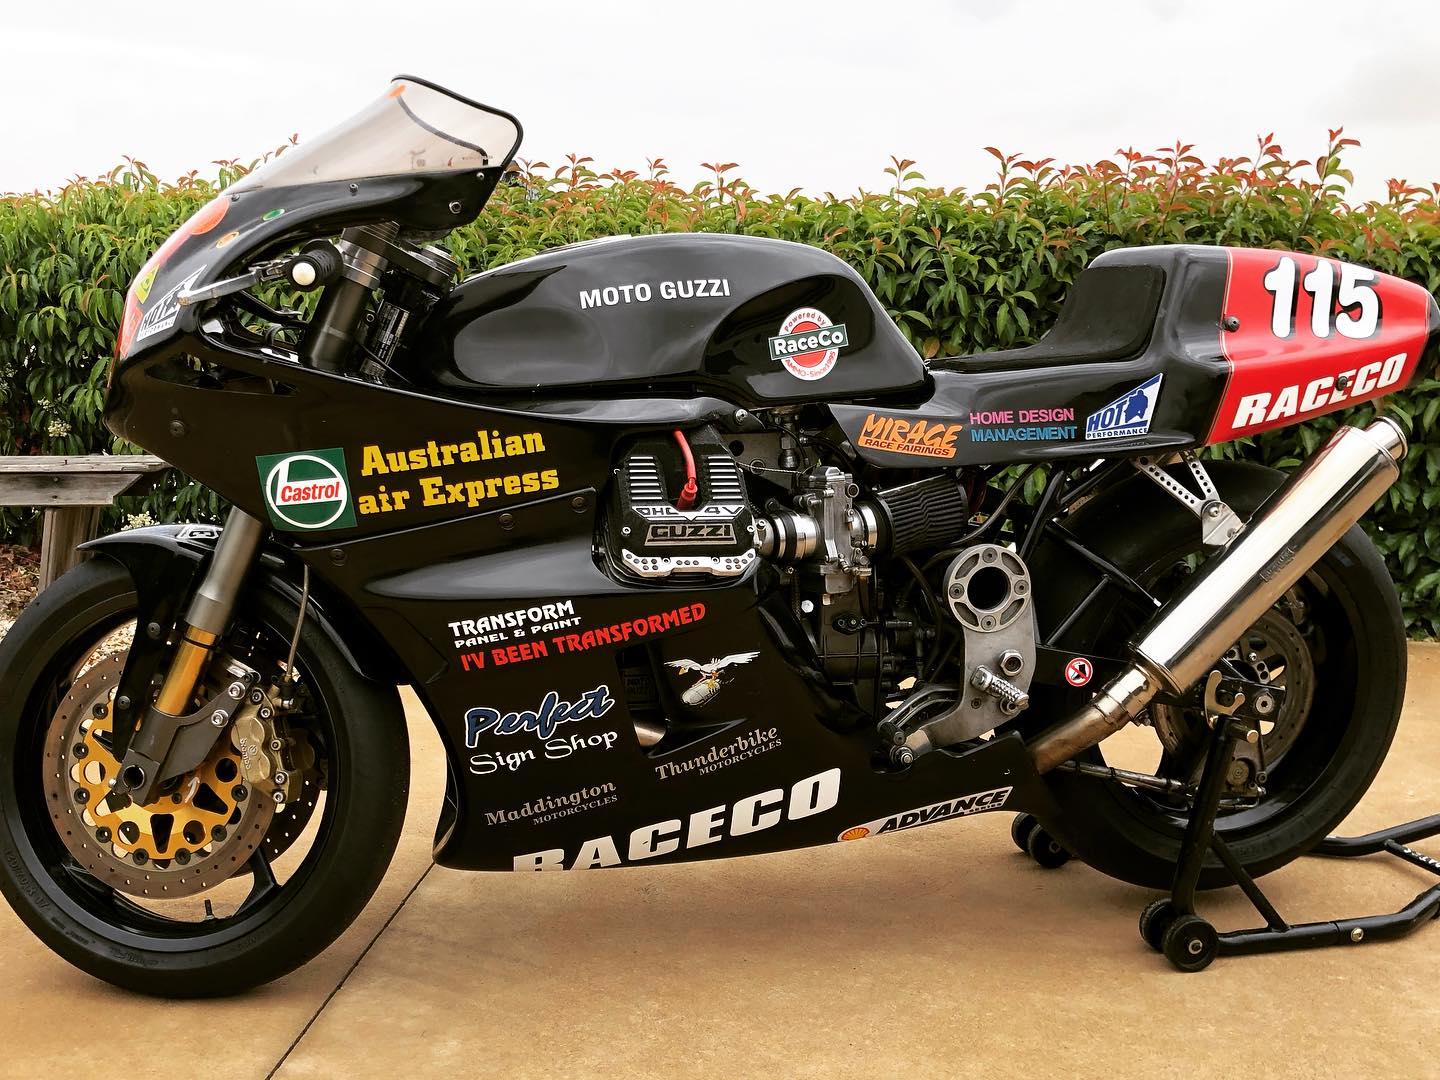 The Moto Guzzi RaceCo